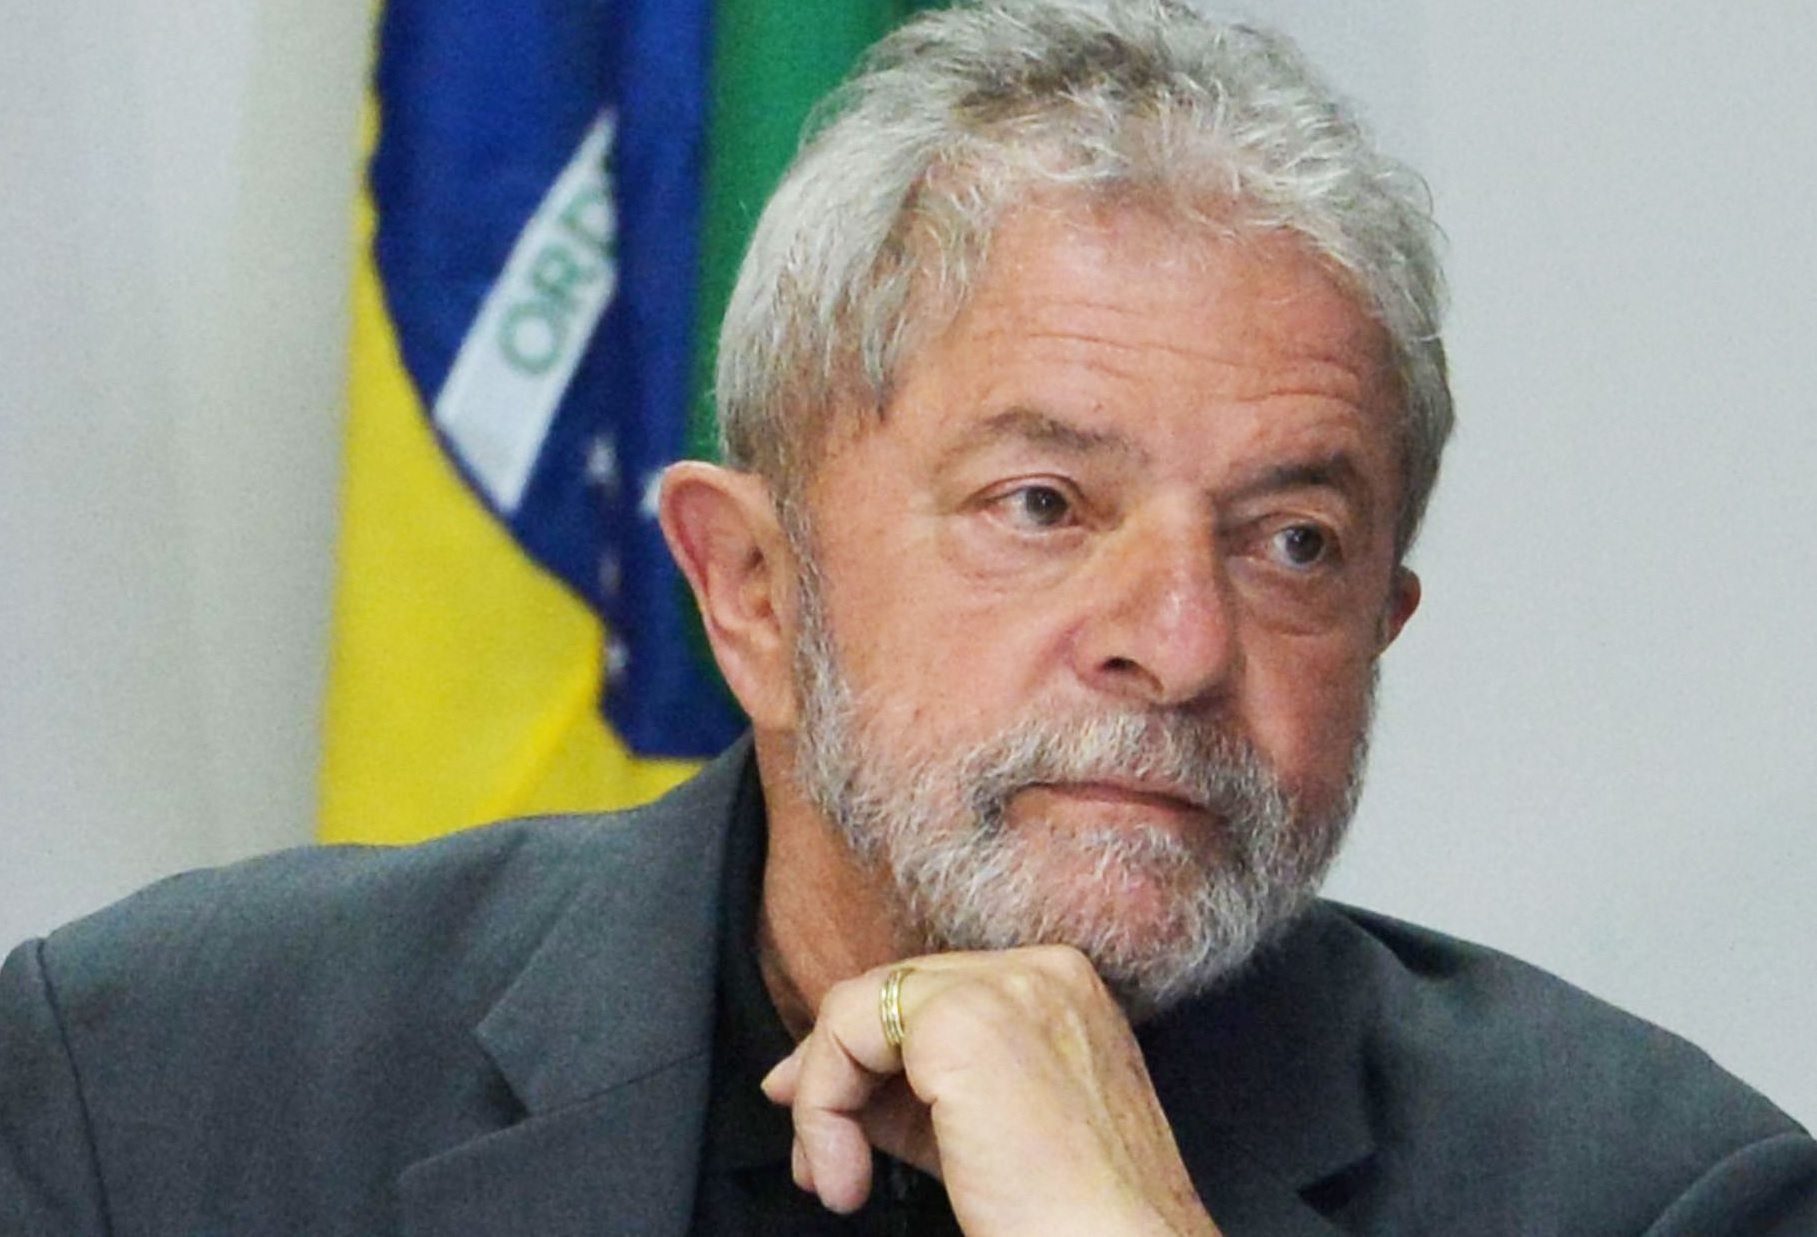 ผู้นำฝ่ายซ้ายบราซิลประกาศ ต้องปรับขึ้นค่าแรงขั้นต่ำตามการเติบโตทางเศรษฐกิจ